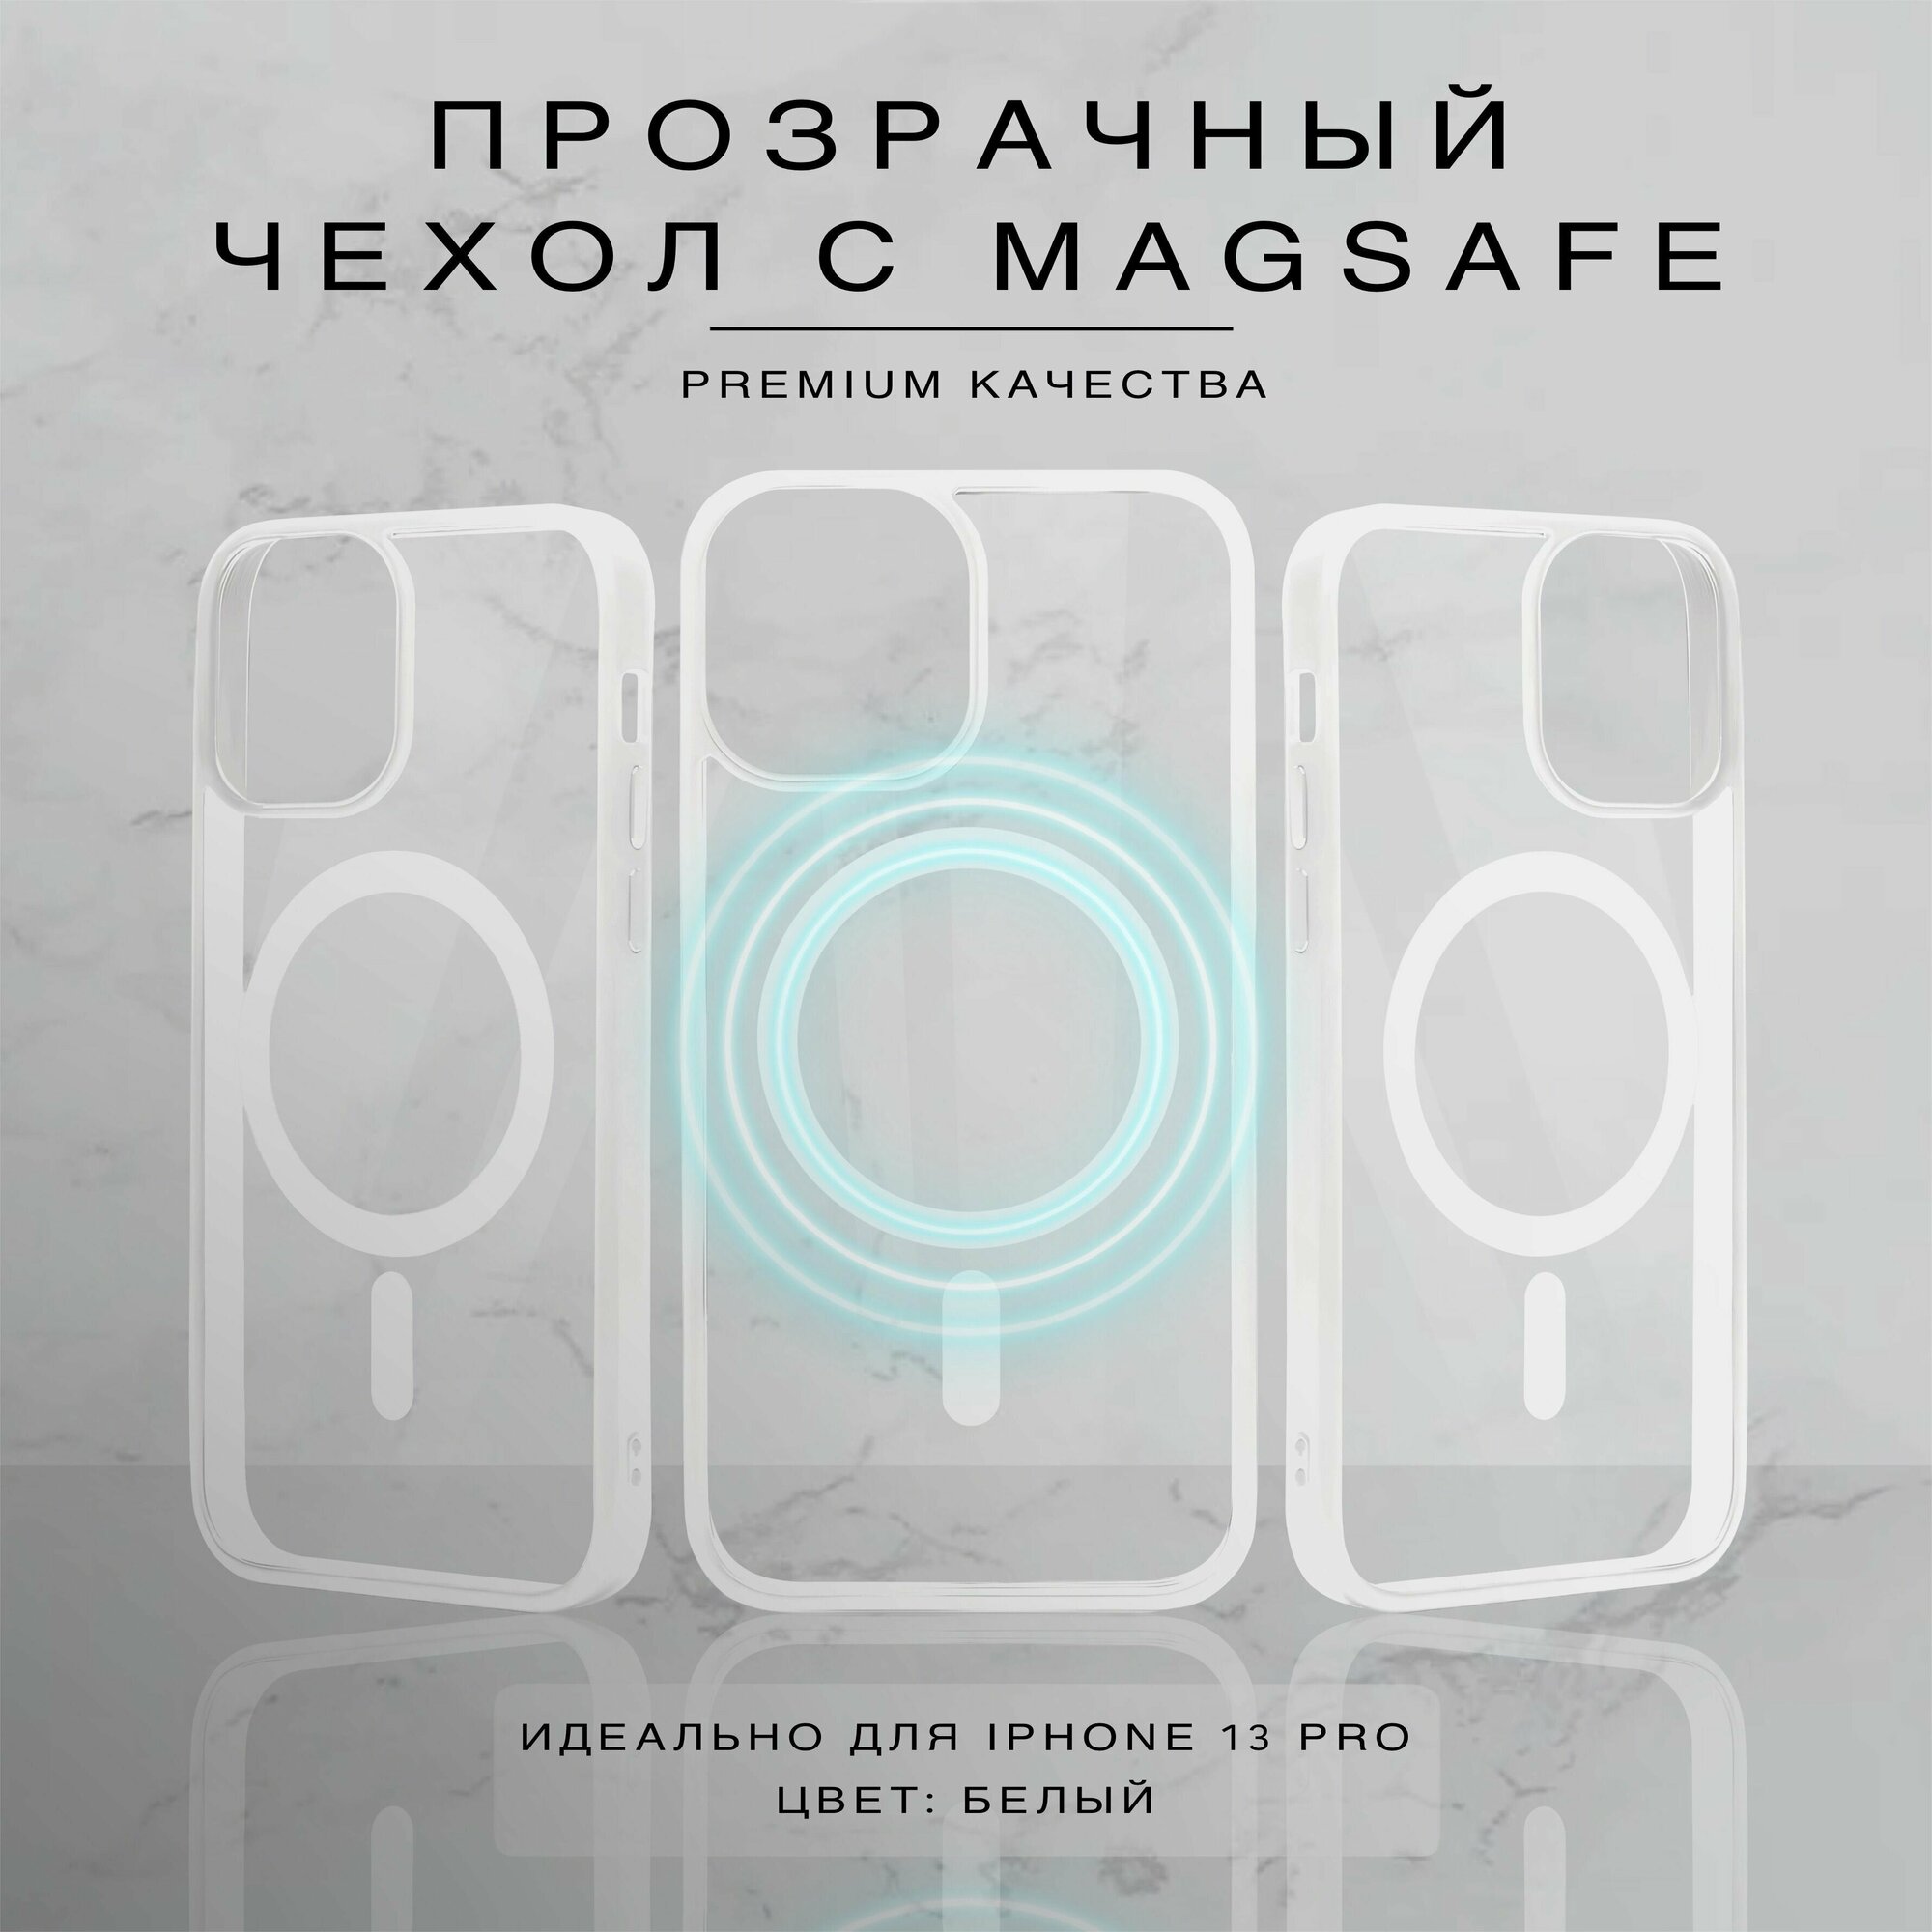 Прозрачный чехол для iPhone 13 Pro с поддержкой Magsafe